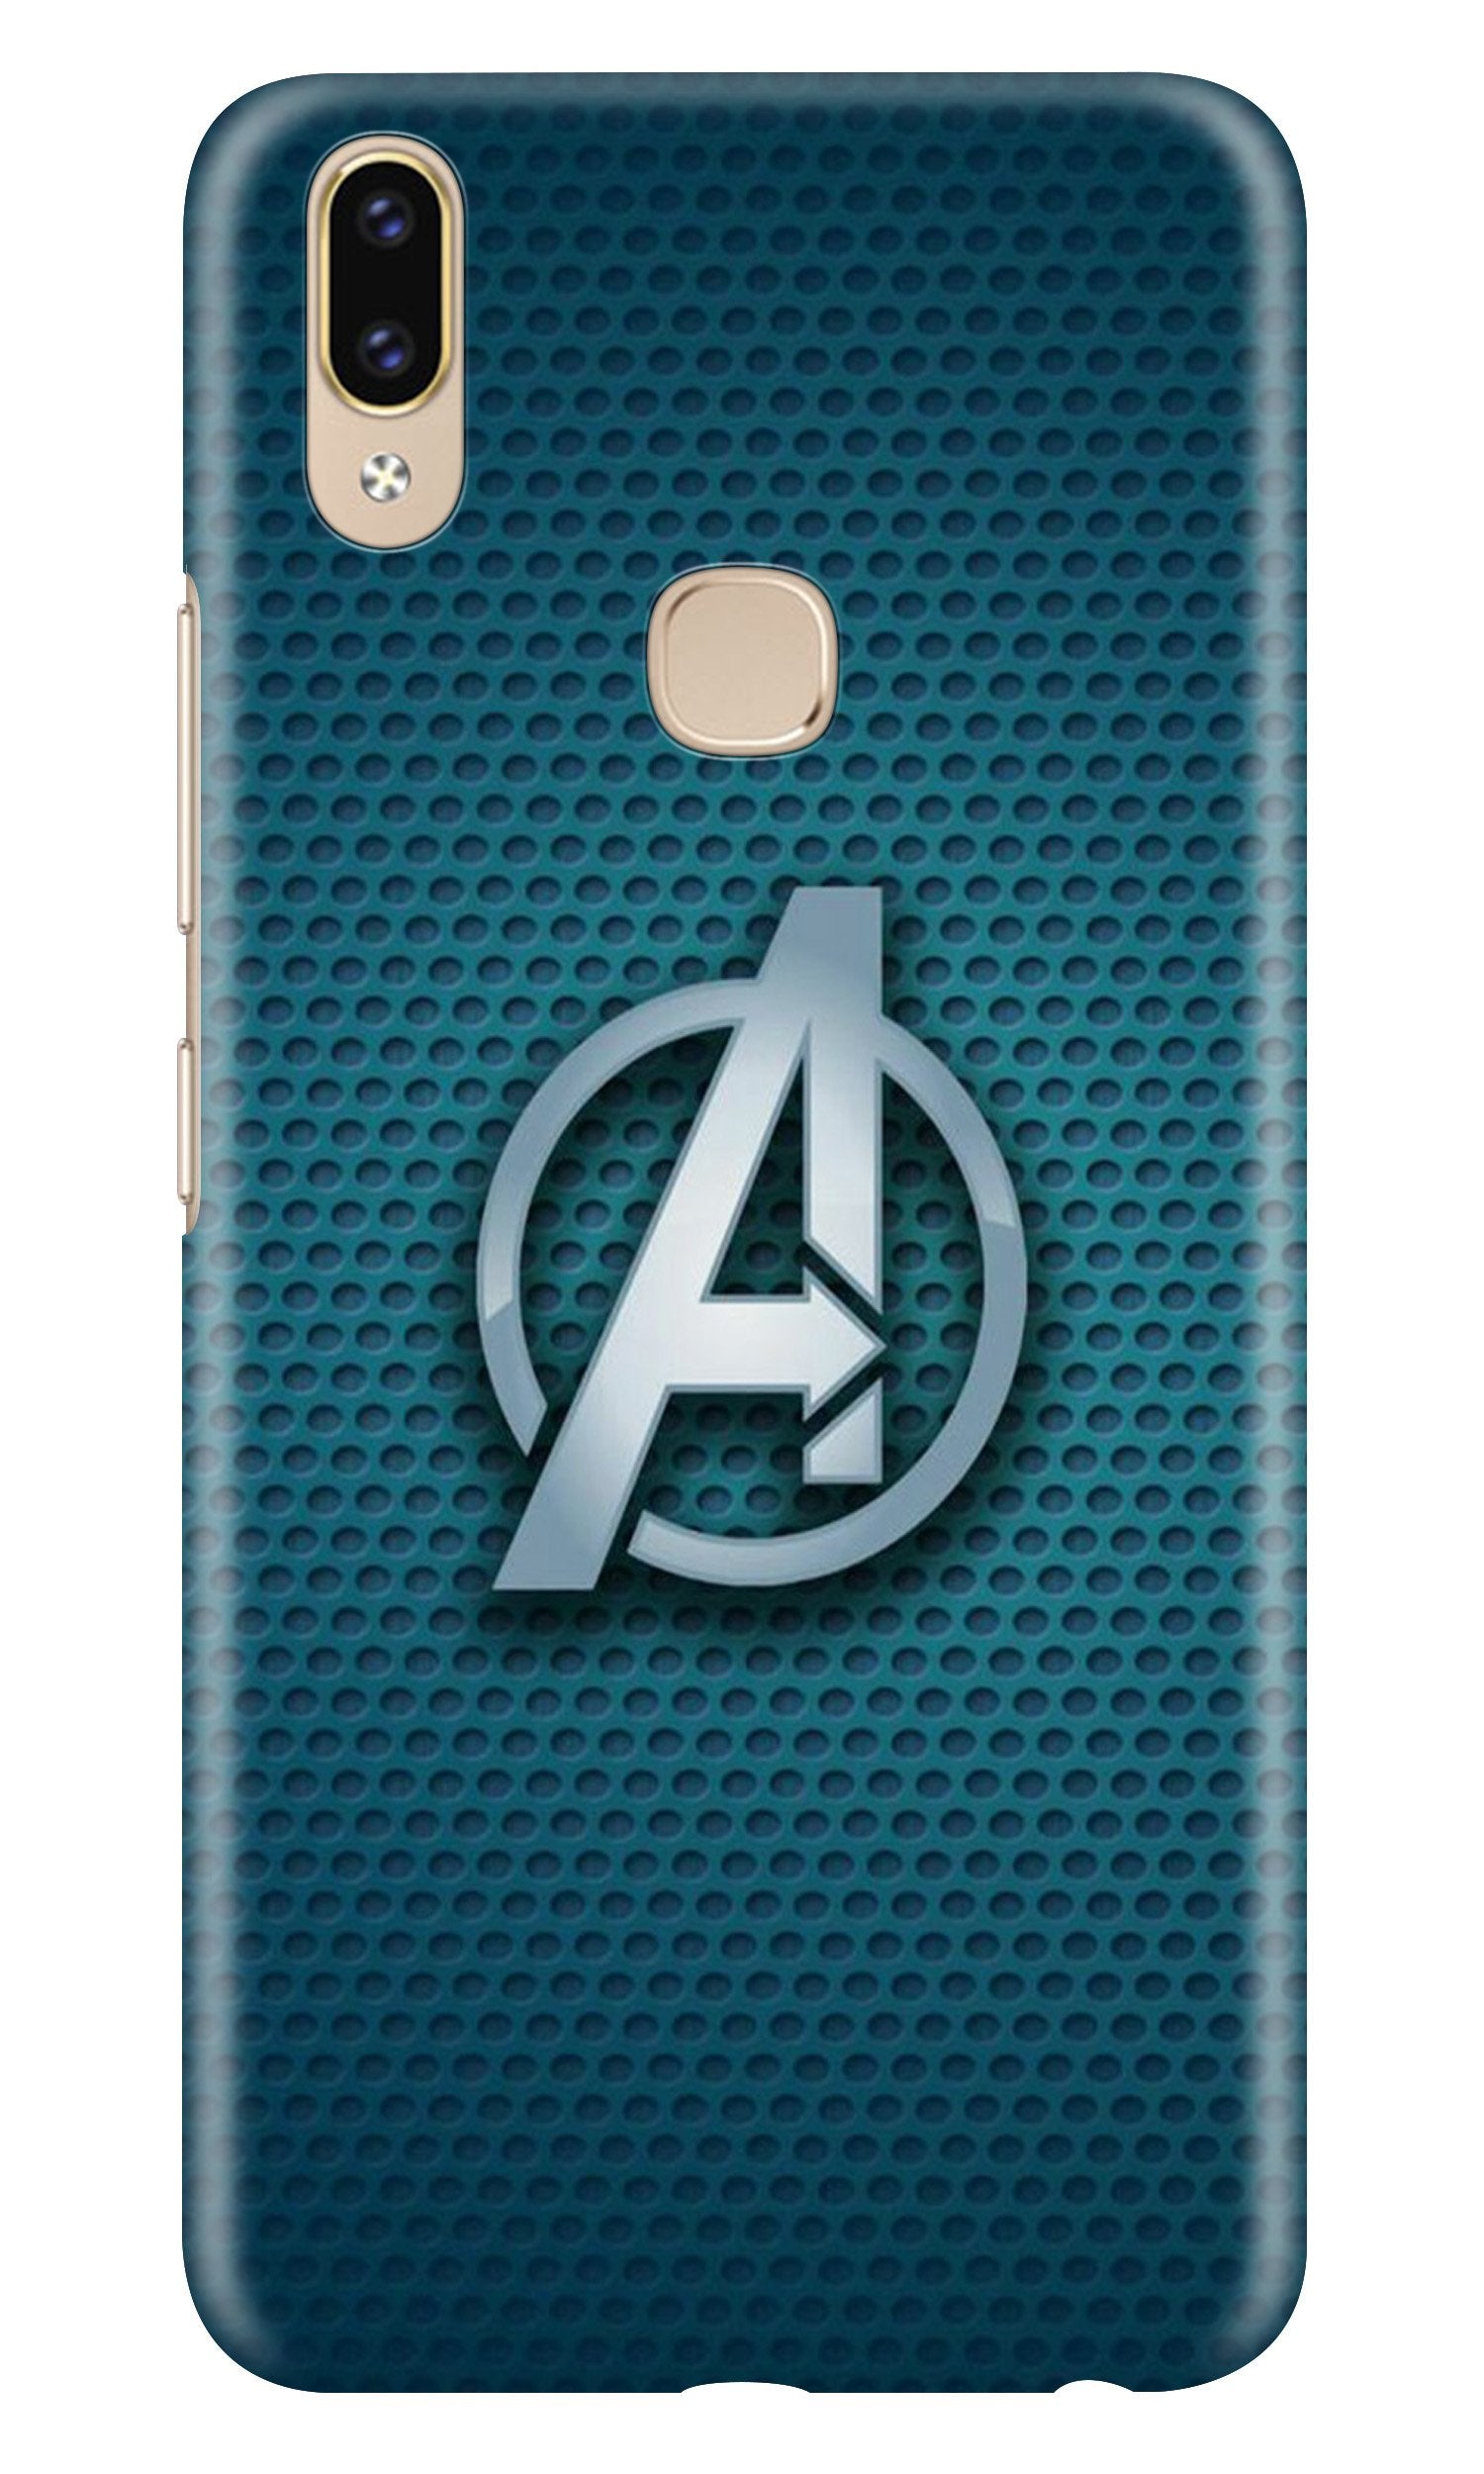 Avengers Case for Asus Zenfone Max Pro M2 (Design No. 246)